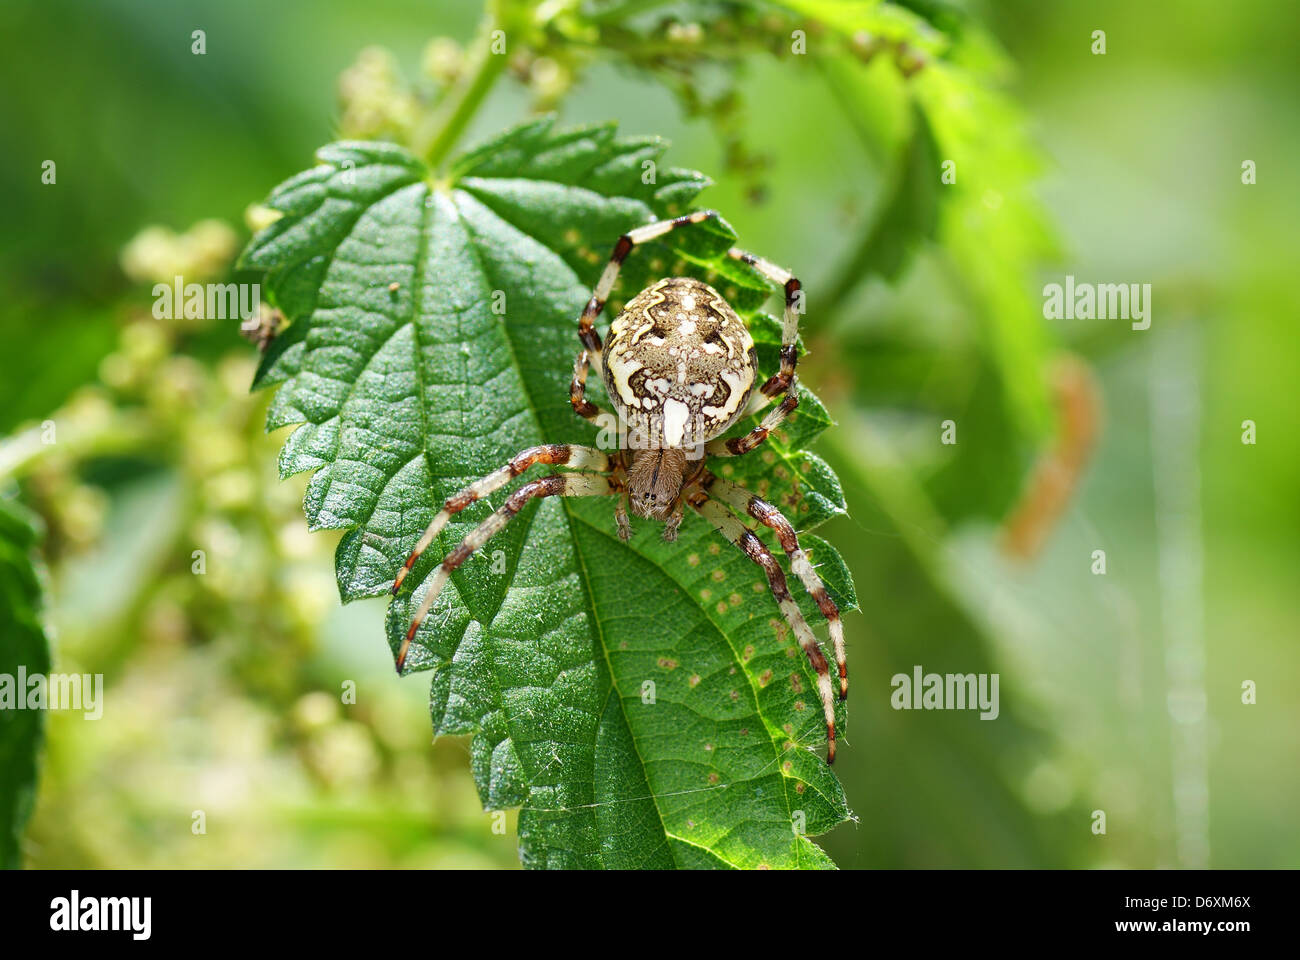 Grosse araignée effrayante sur la feuille verte Banque D'Images